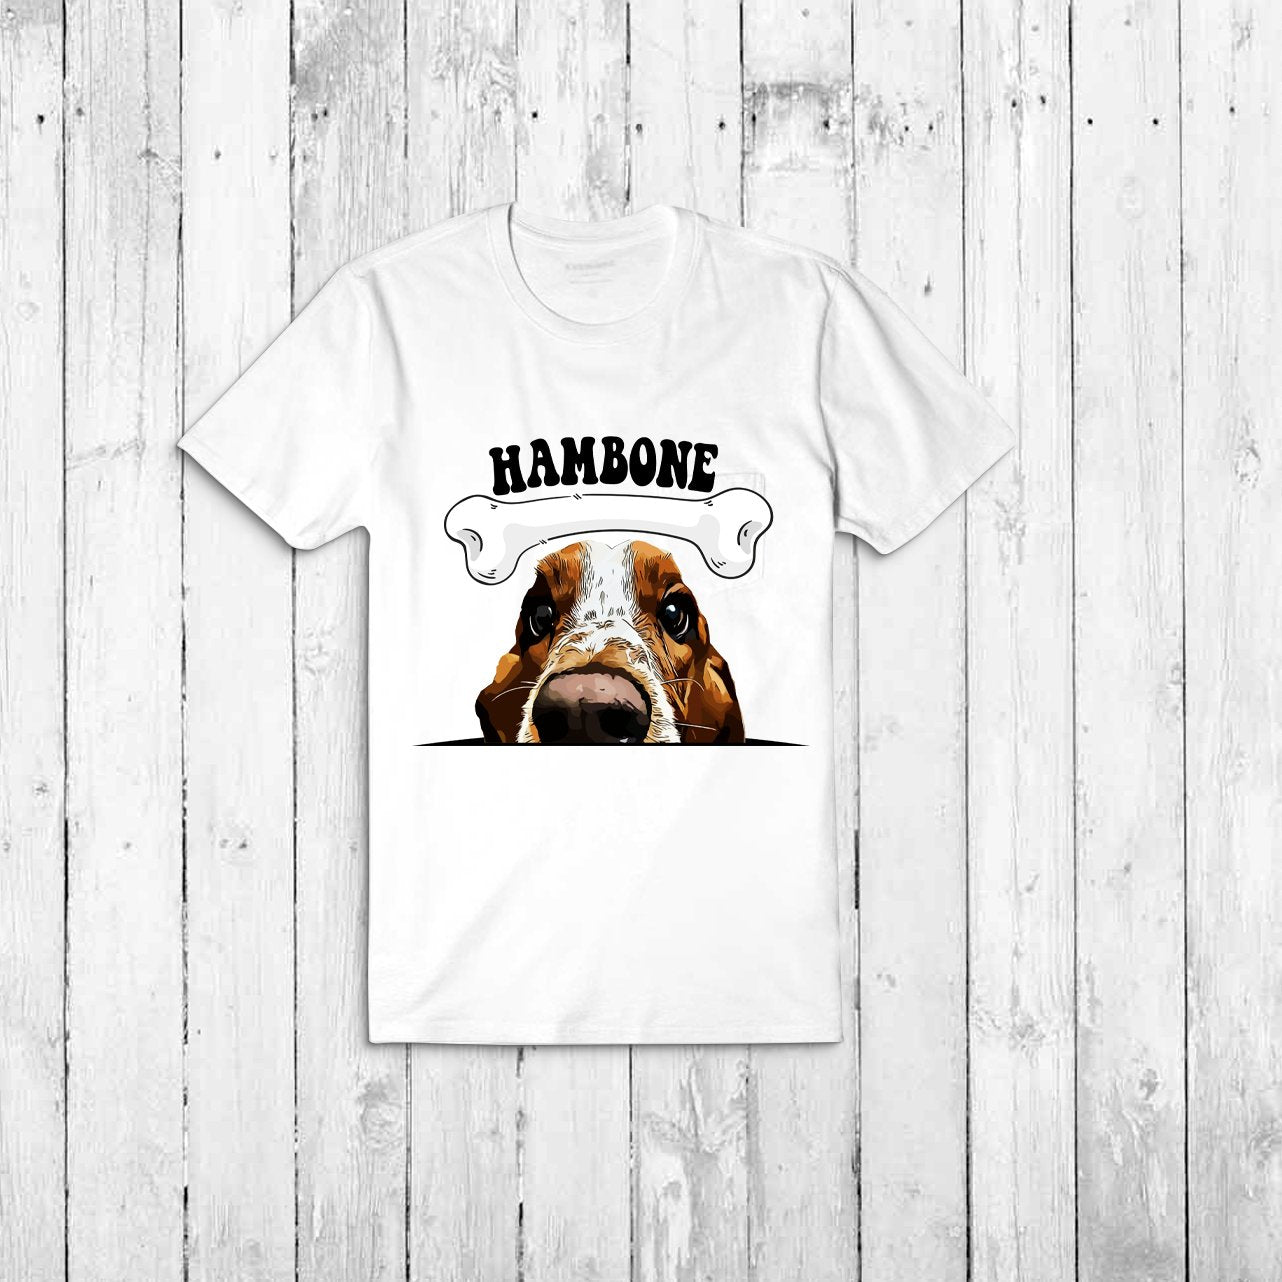 Hambone's T Shirts